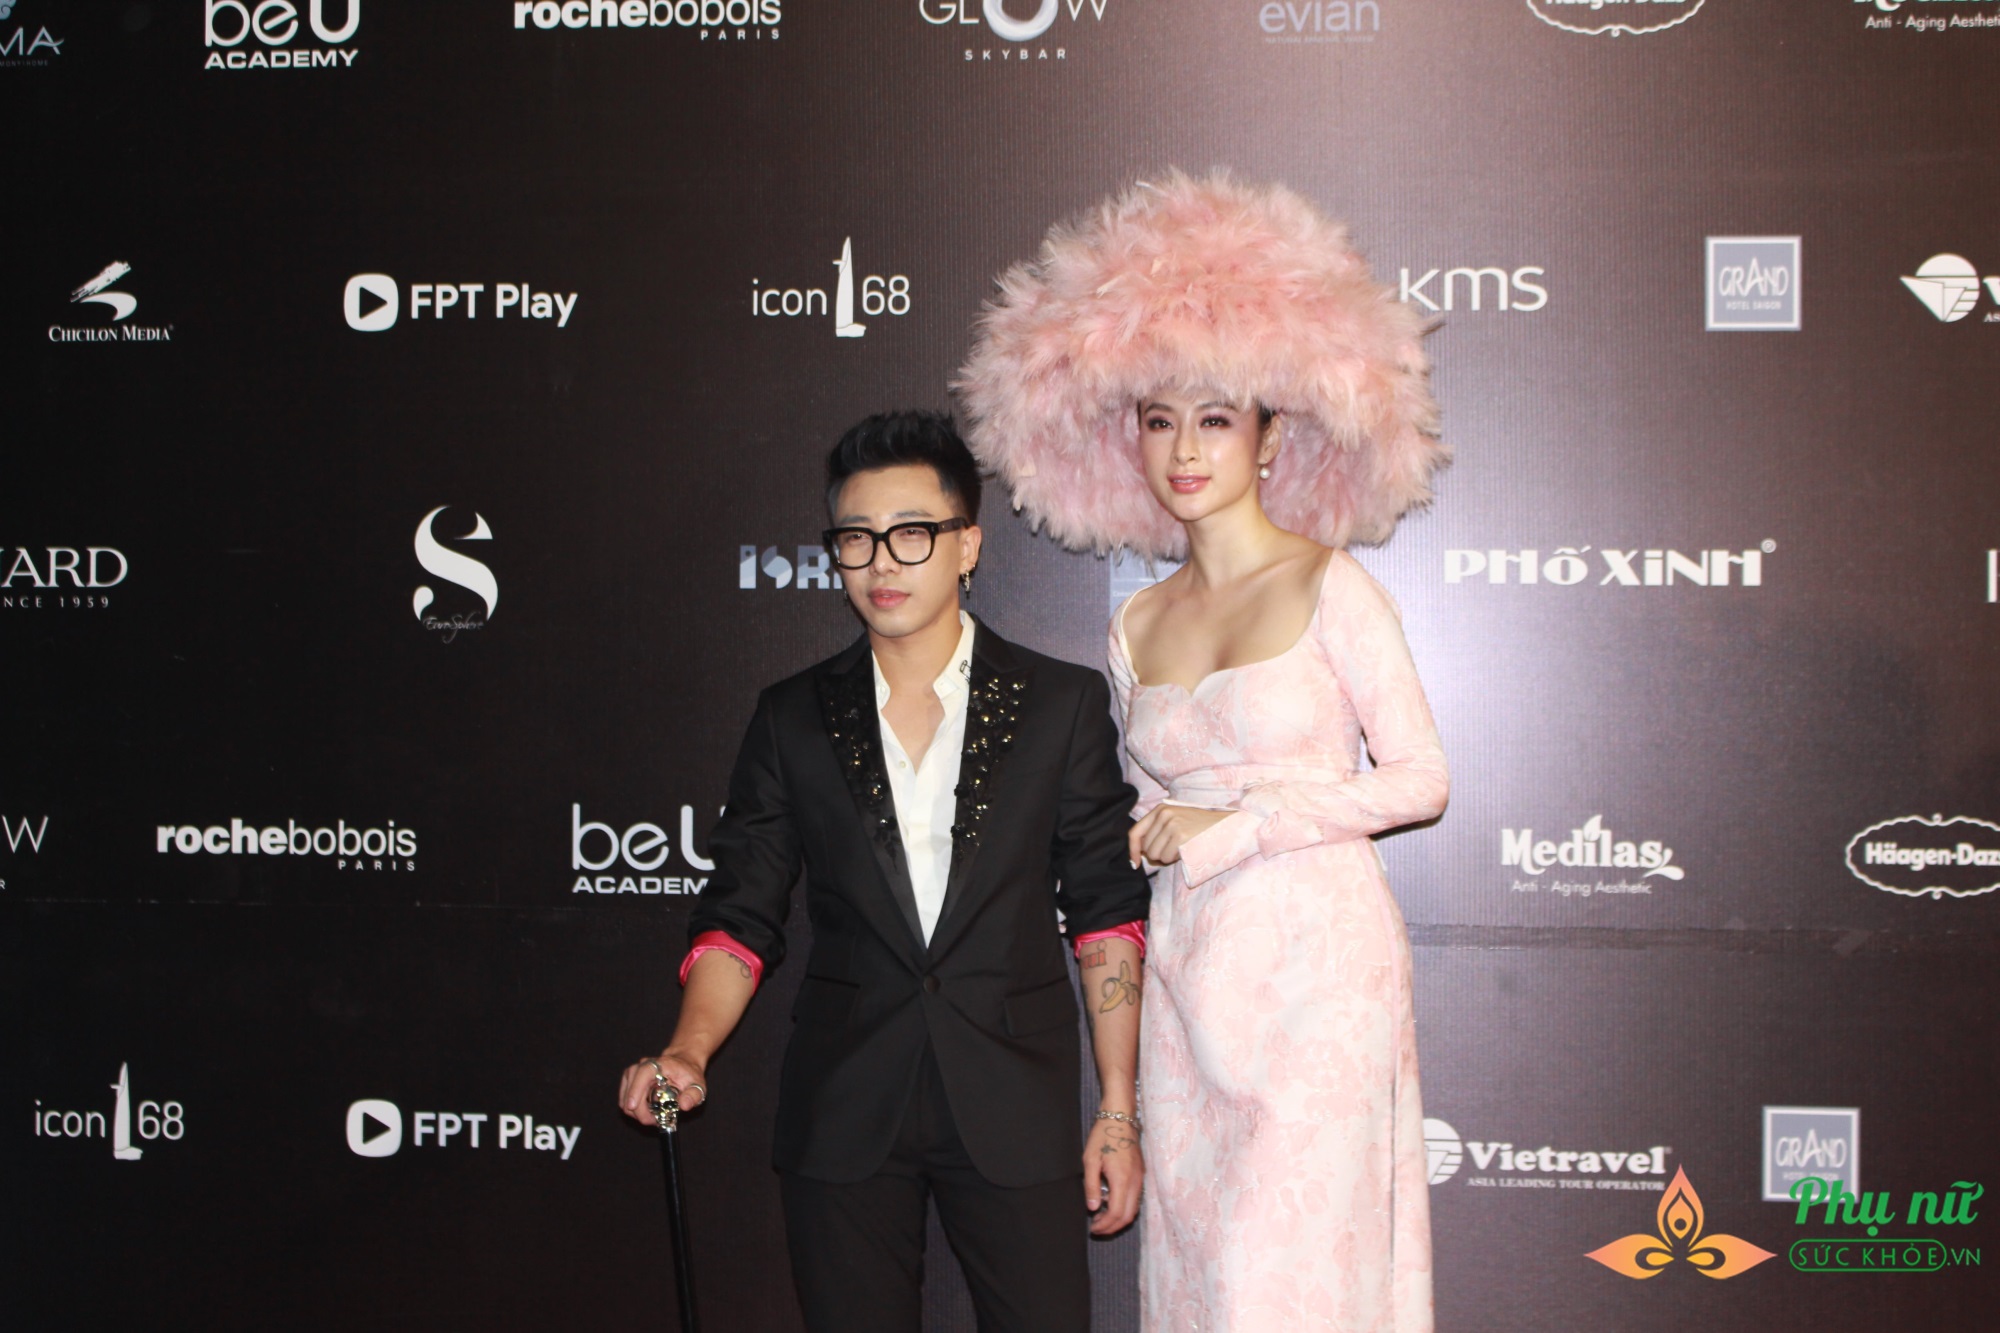 Diện trang phục độc lạ, Angela Phương Trinh và Thảo Trang nổi bần bật tại thảm đỏ VIFW - Ảnh 4